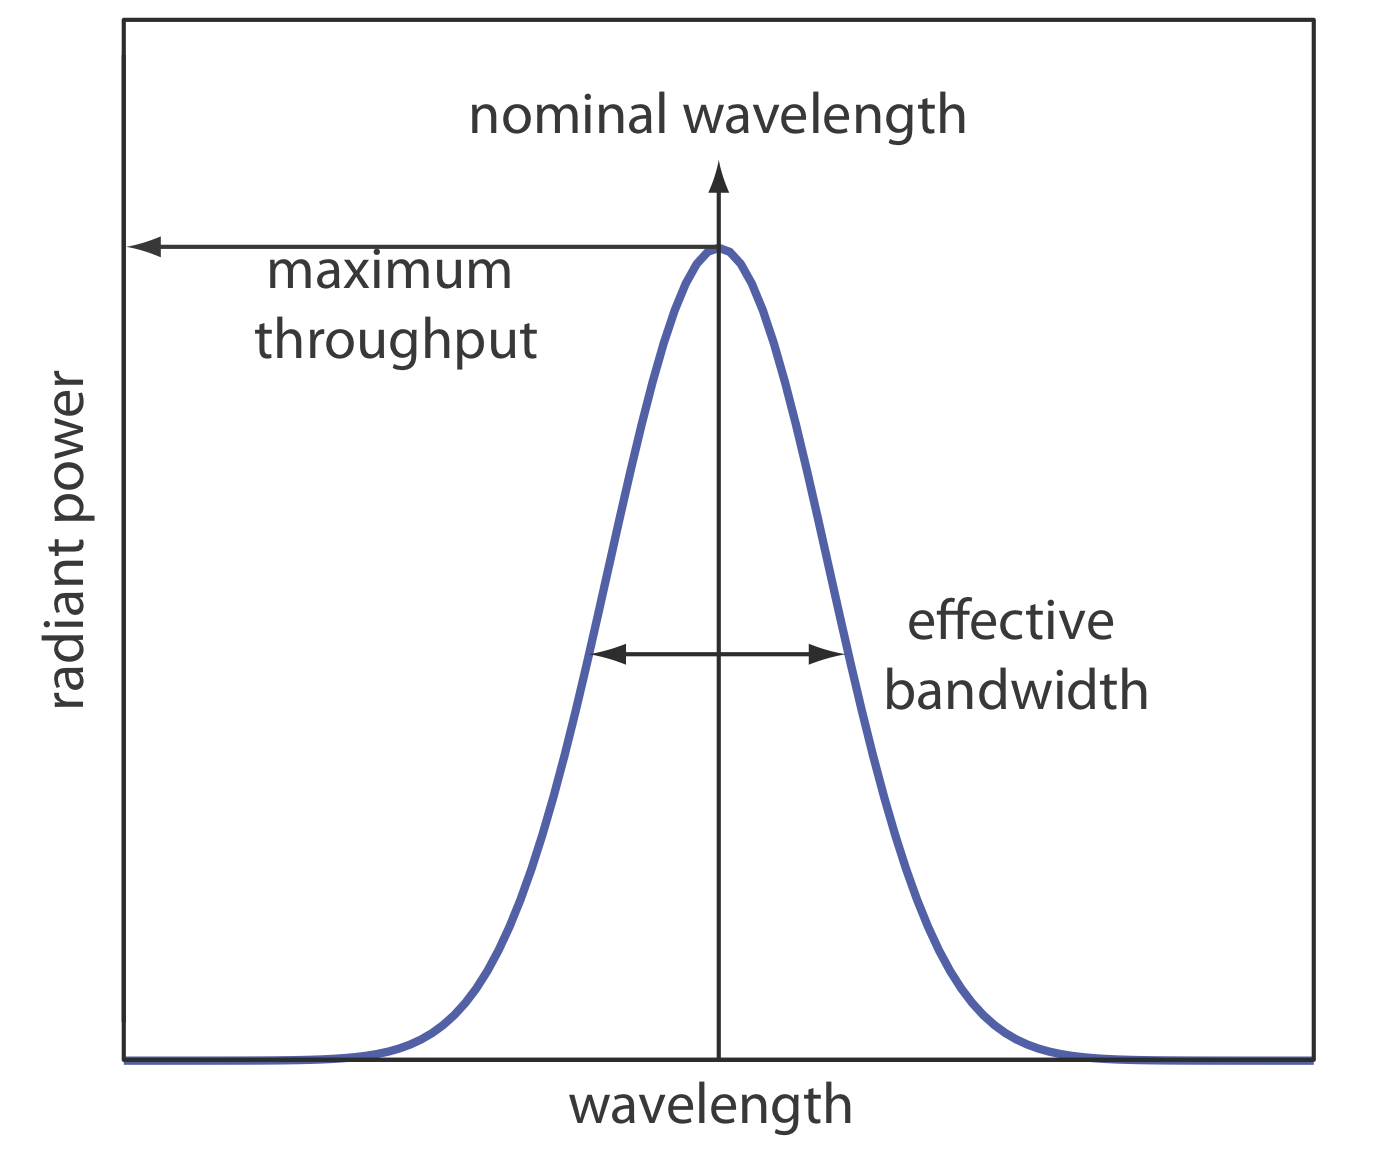 El rendimiento máximo varía de cero a la longitud de onda en el punto más alto del pico. El ancho de banda efectivo es una distancia igual del pico.